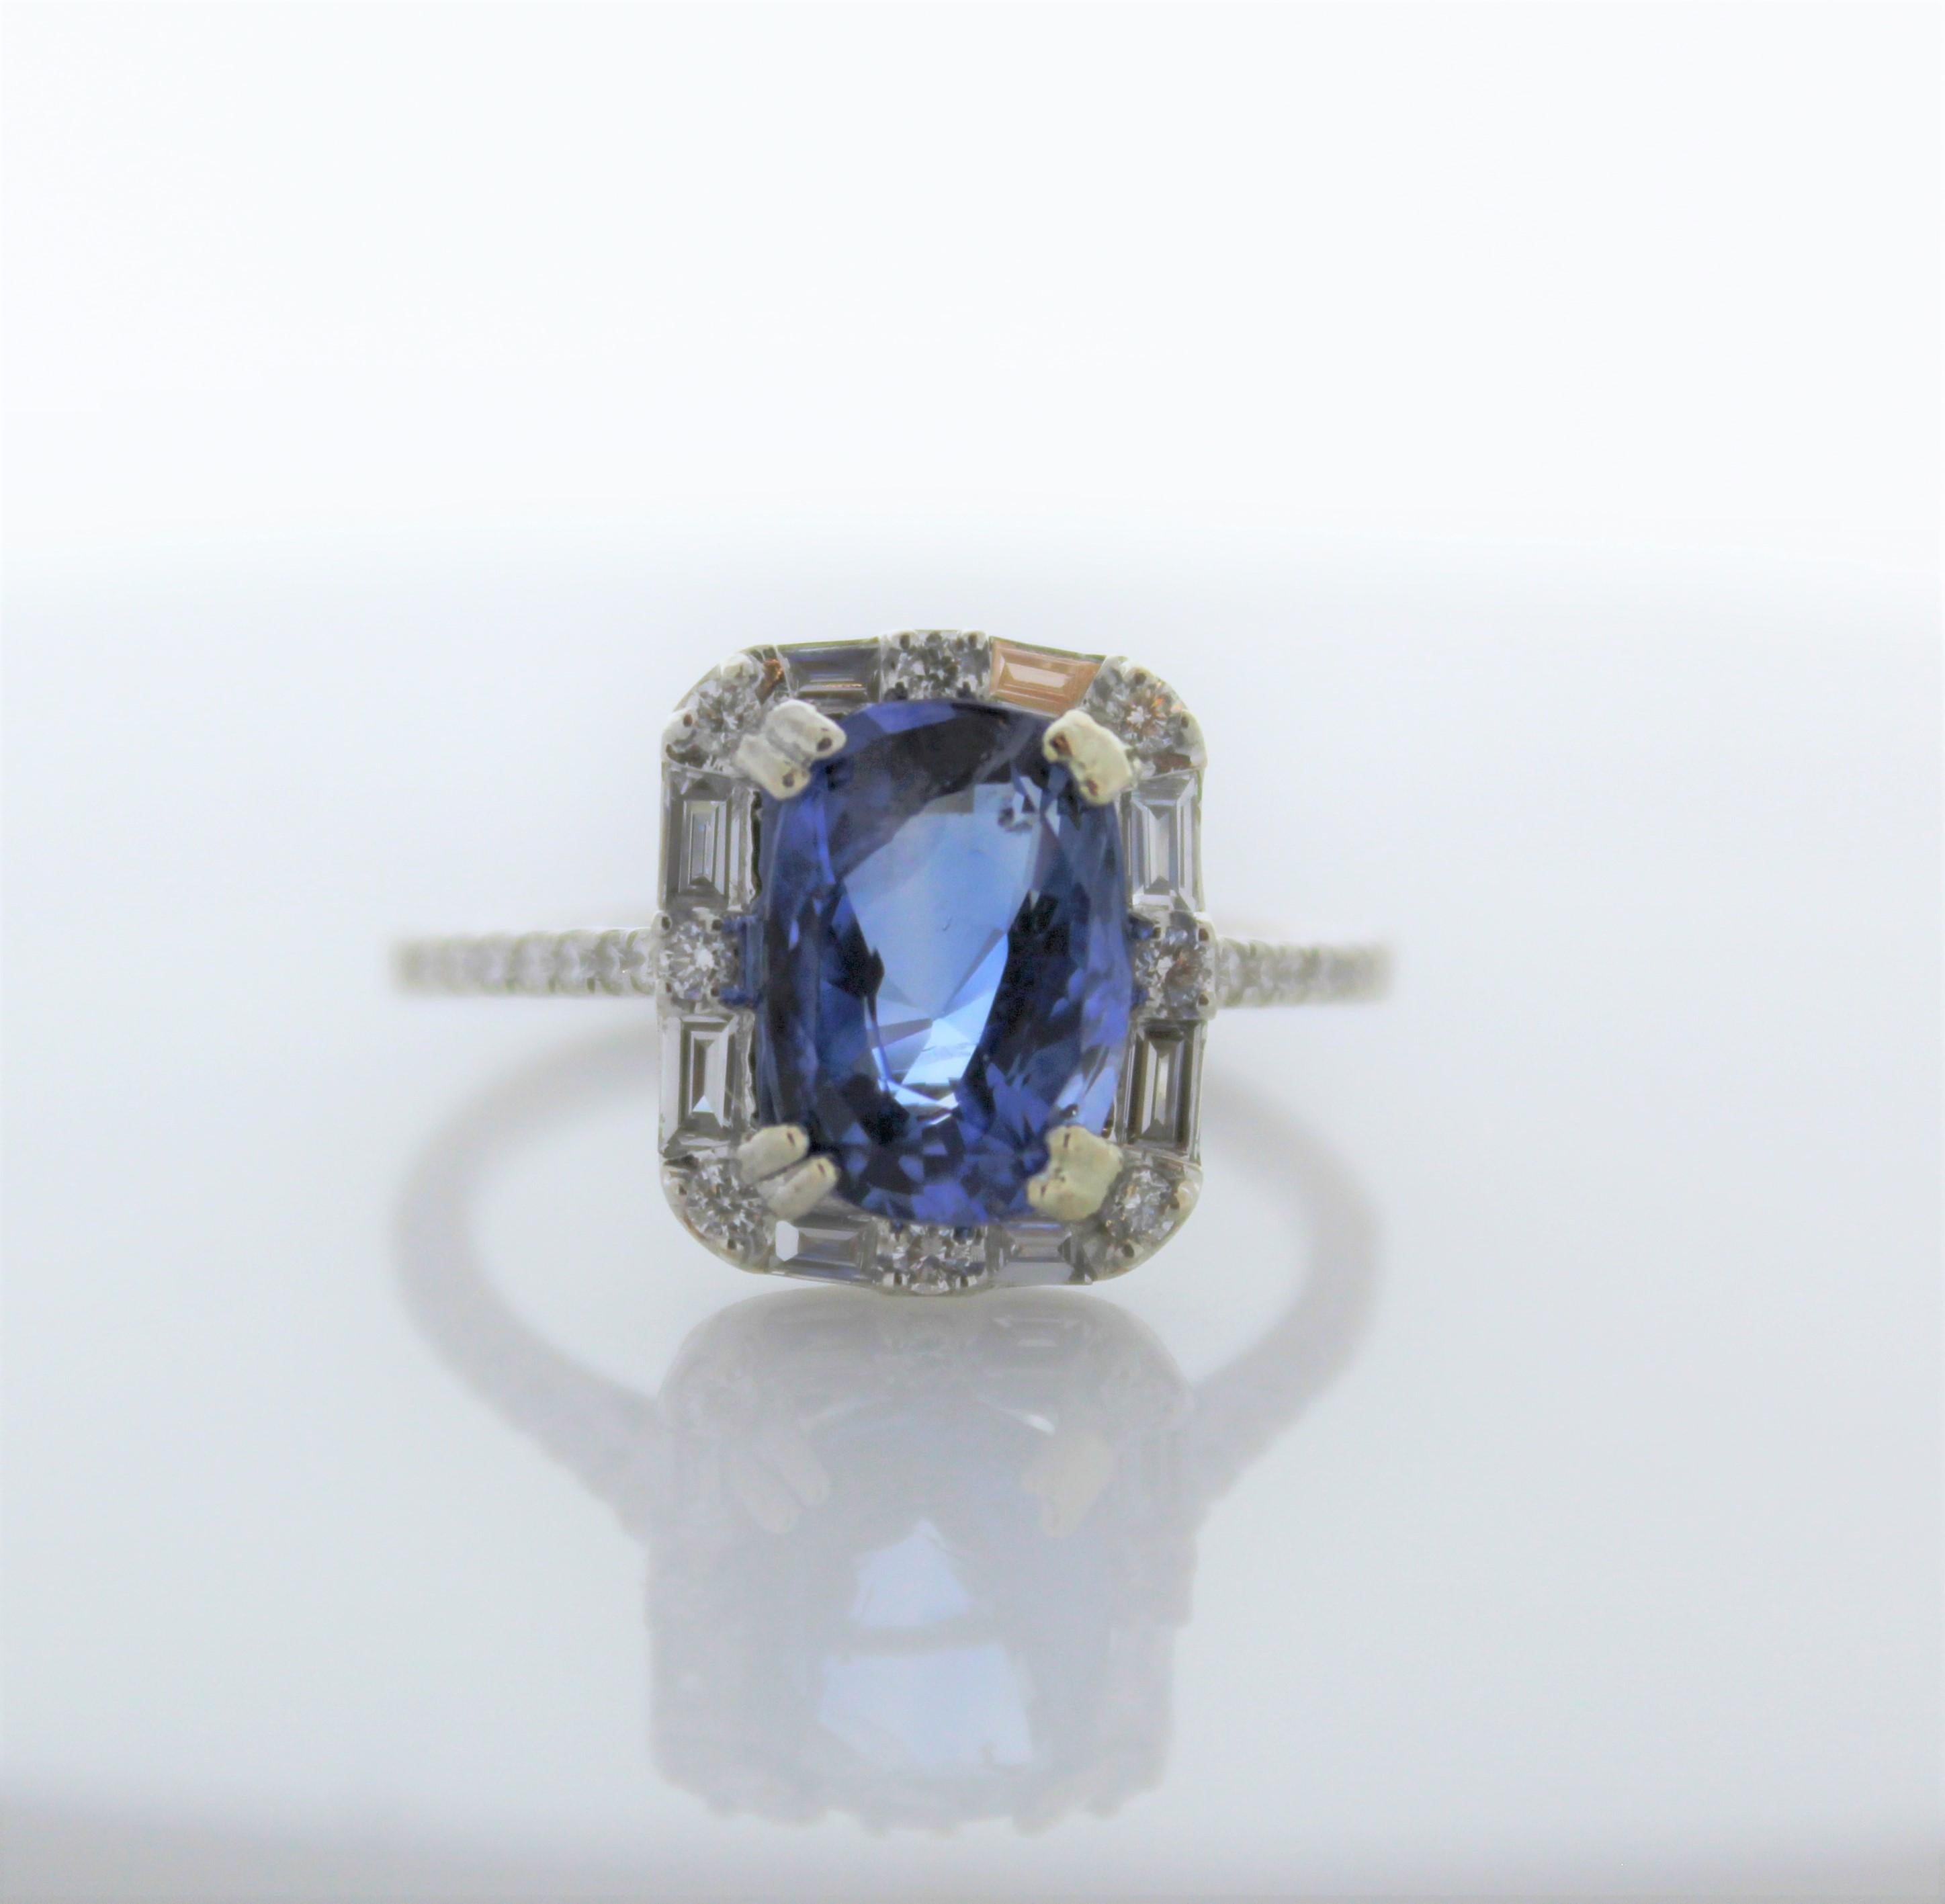 Ce saphir bleu royal vibrant de 3,48 carats occupe le centre de la scène dans cette luxueuse monture. Sa pierre précieuse est originaire du Sri Lanka. Elle est polie et facettée en forme de coussin. Sa couleur, sa transparence et son lustre sont